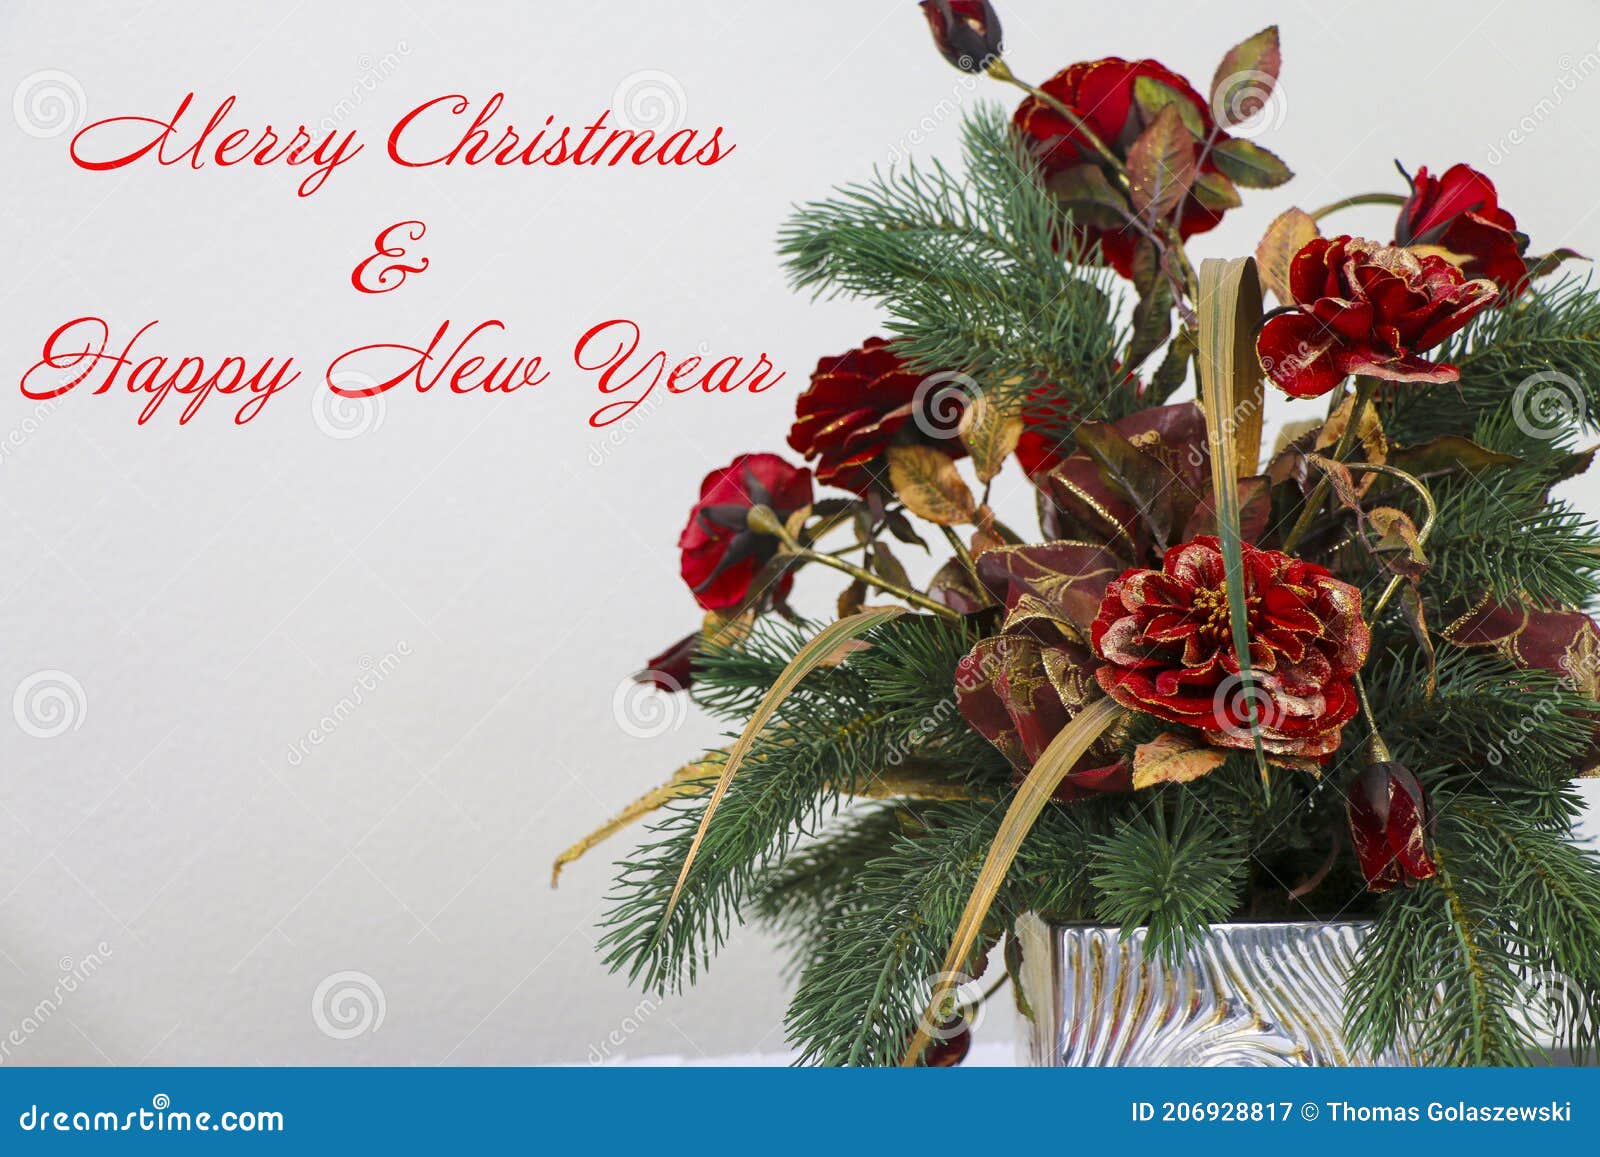 Una Flor Navideña Ramo De Flores Rojas Lujosas Con Navidad Y Feliz Año  Nuevo Con Ramas De árboles Navideños. Imagen de archivo - Imagen de verde,  plata: 206928817